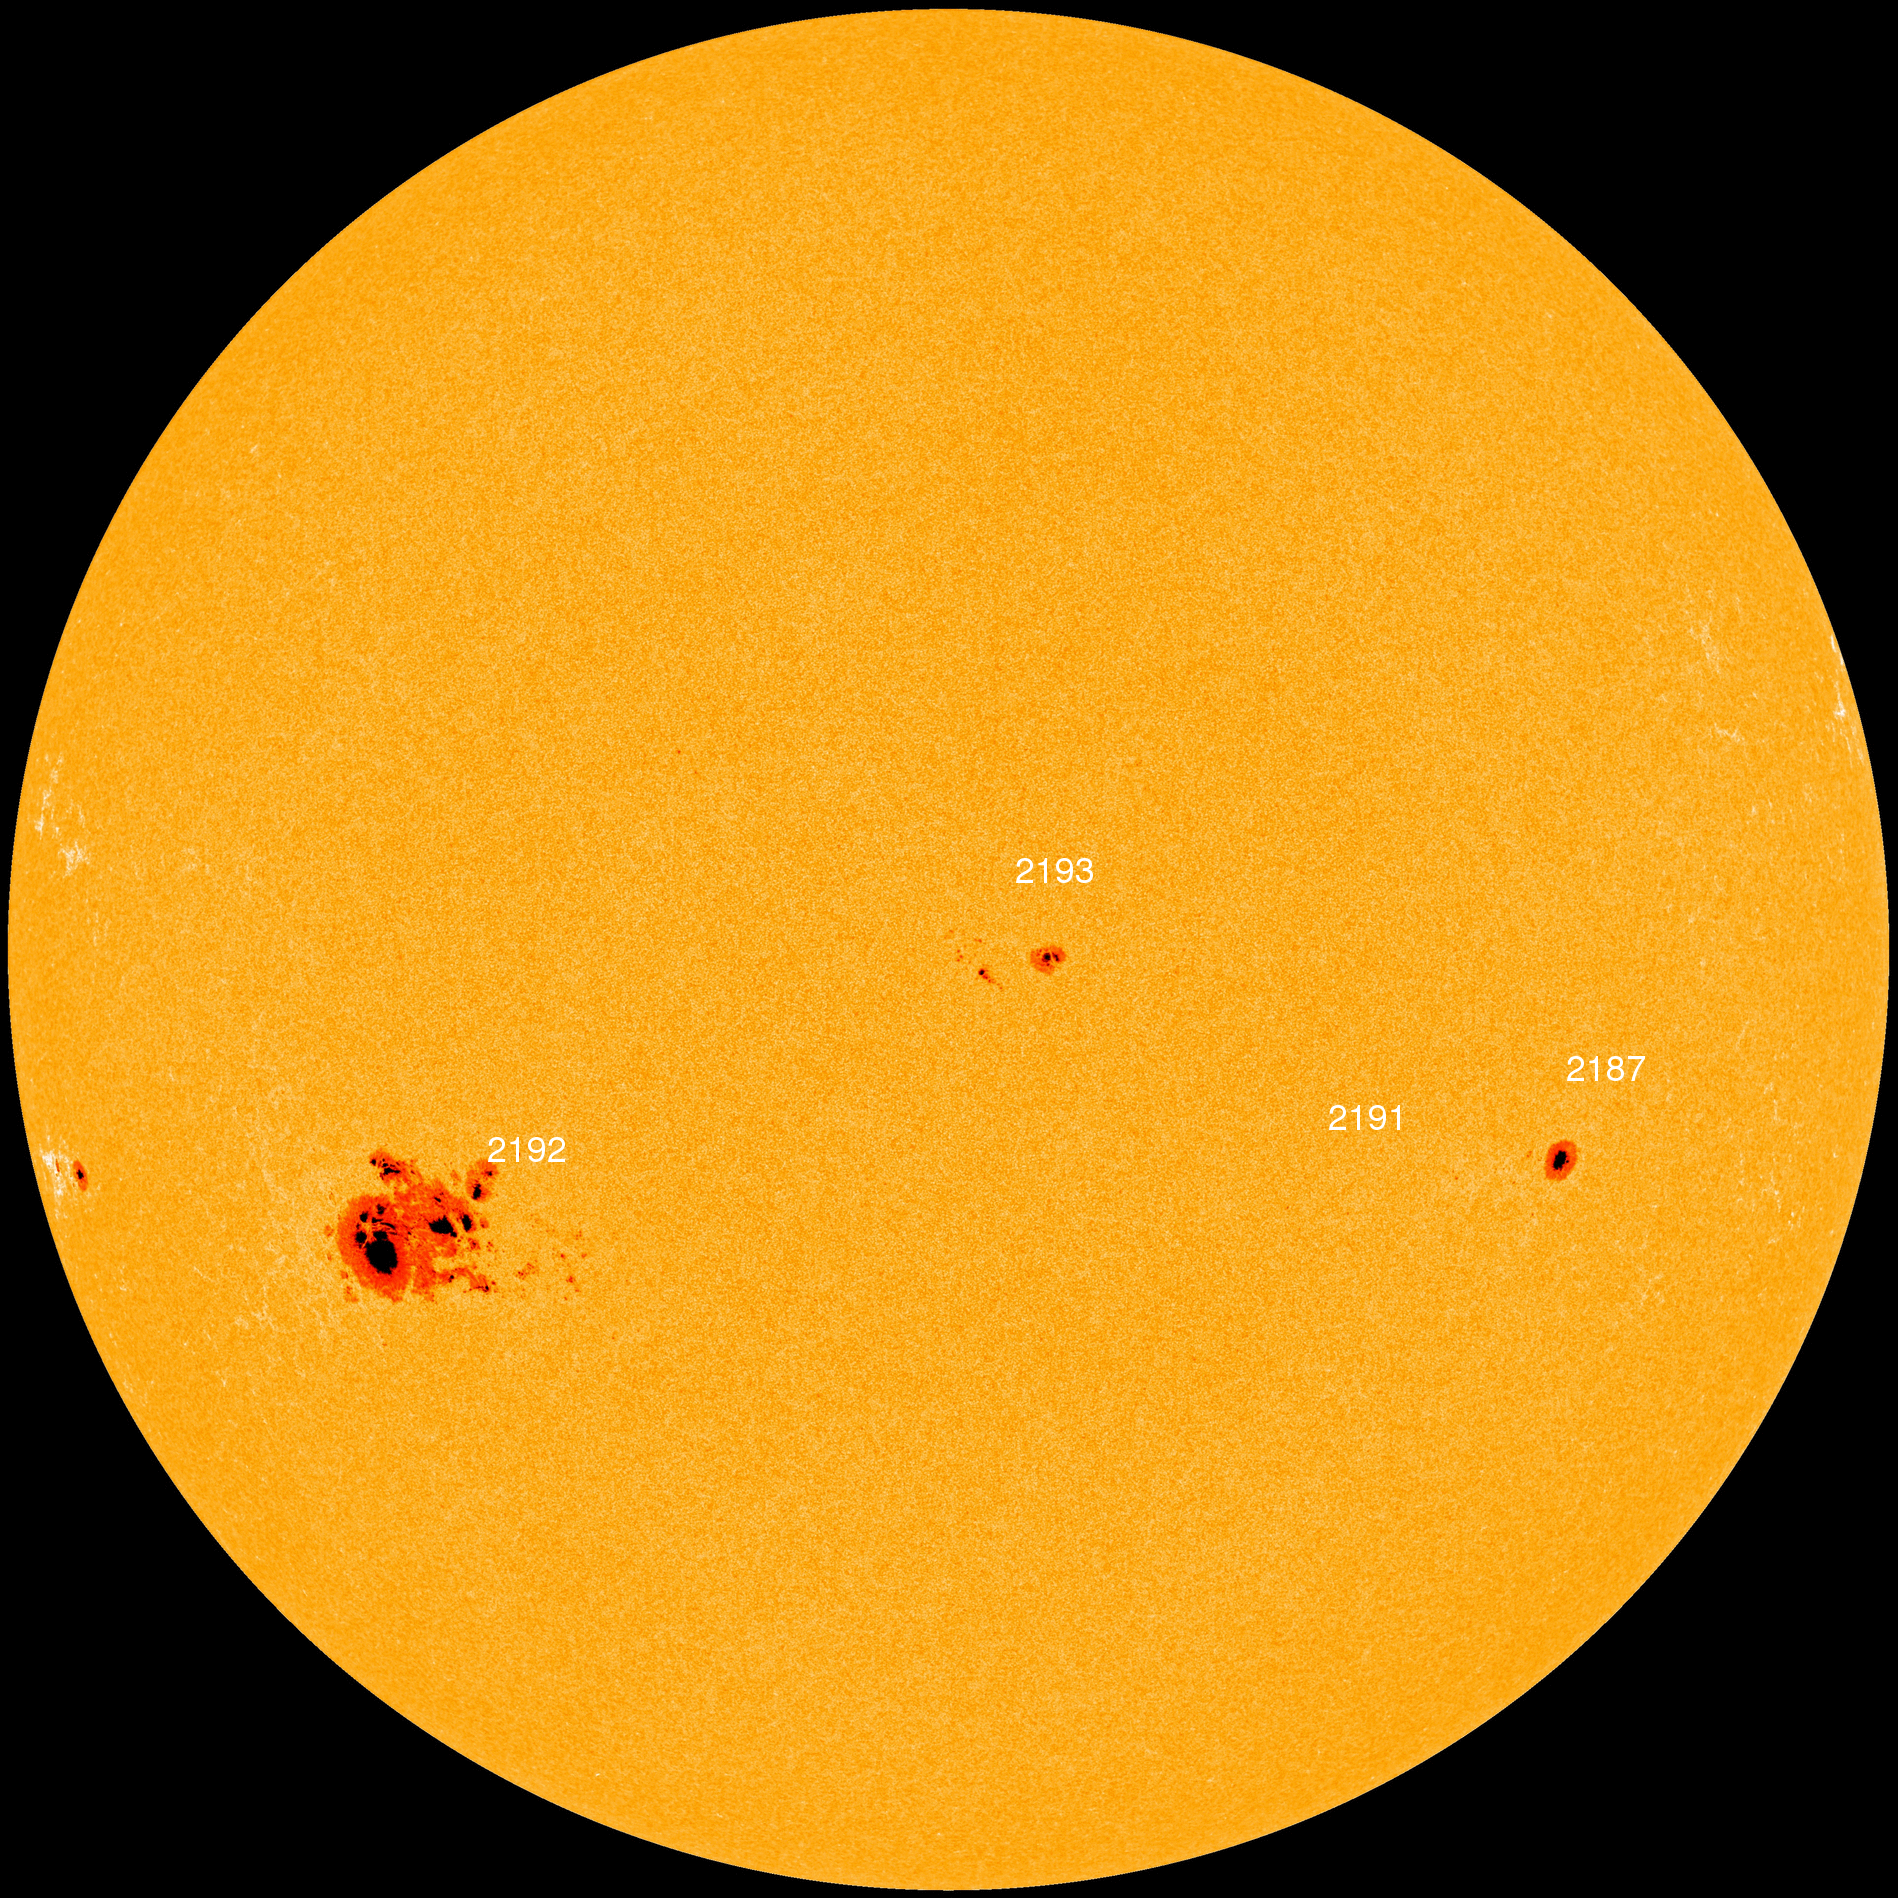 Erupciones solares  - Página 2 Hmi1898